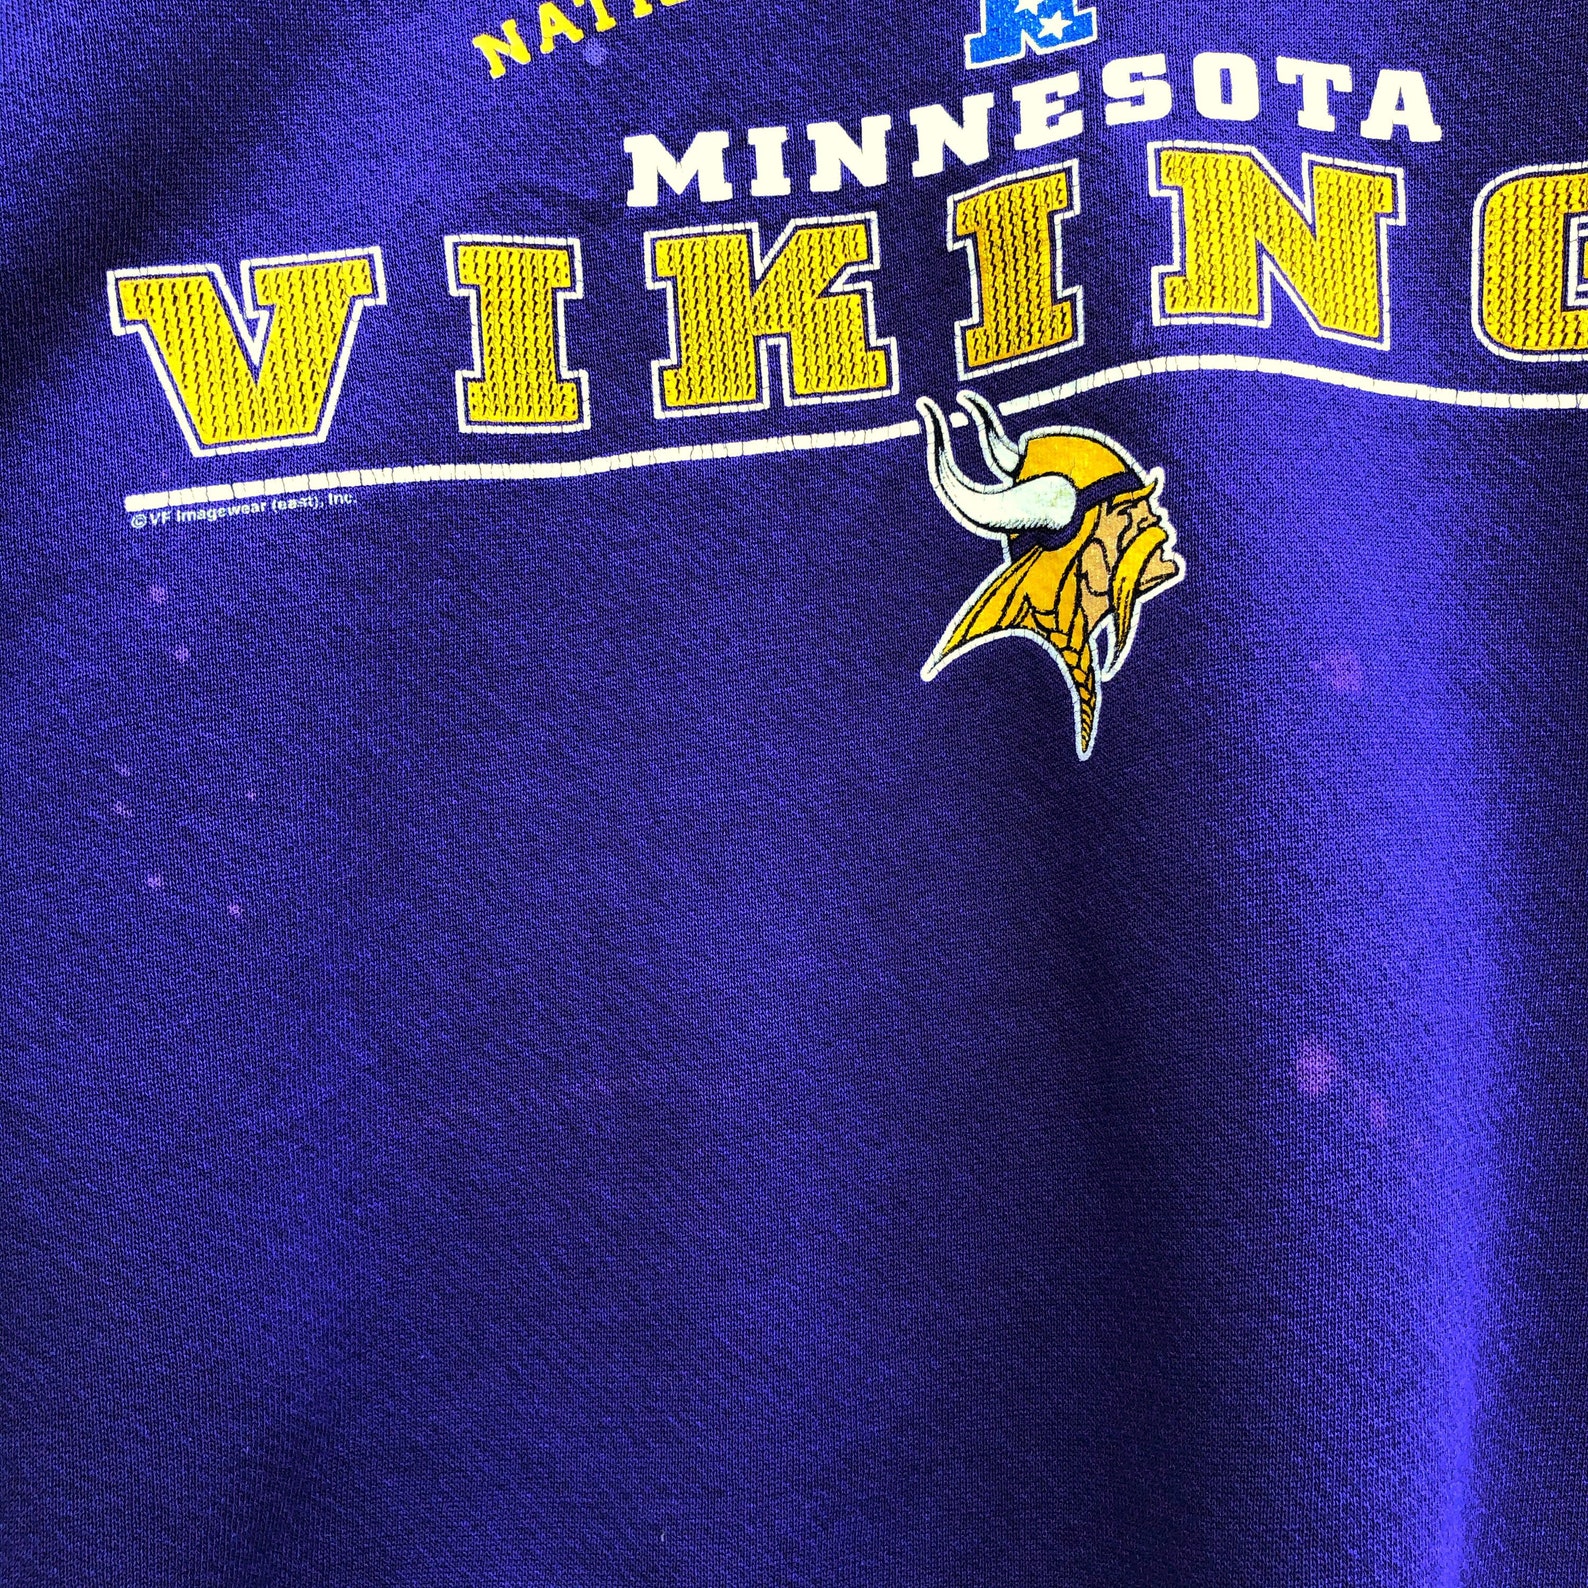 Vintage Minnesota Vikings NFLP Graphic American Sports Lee - Etsy